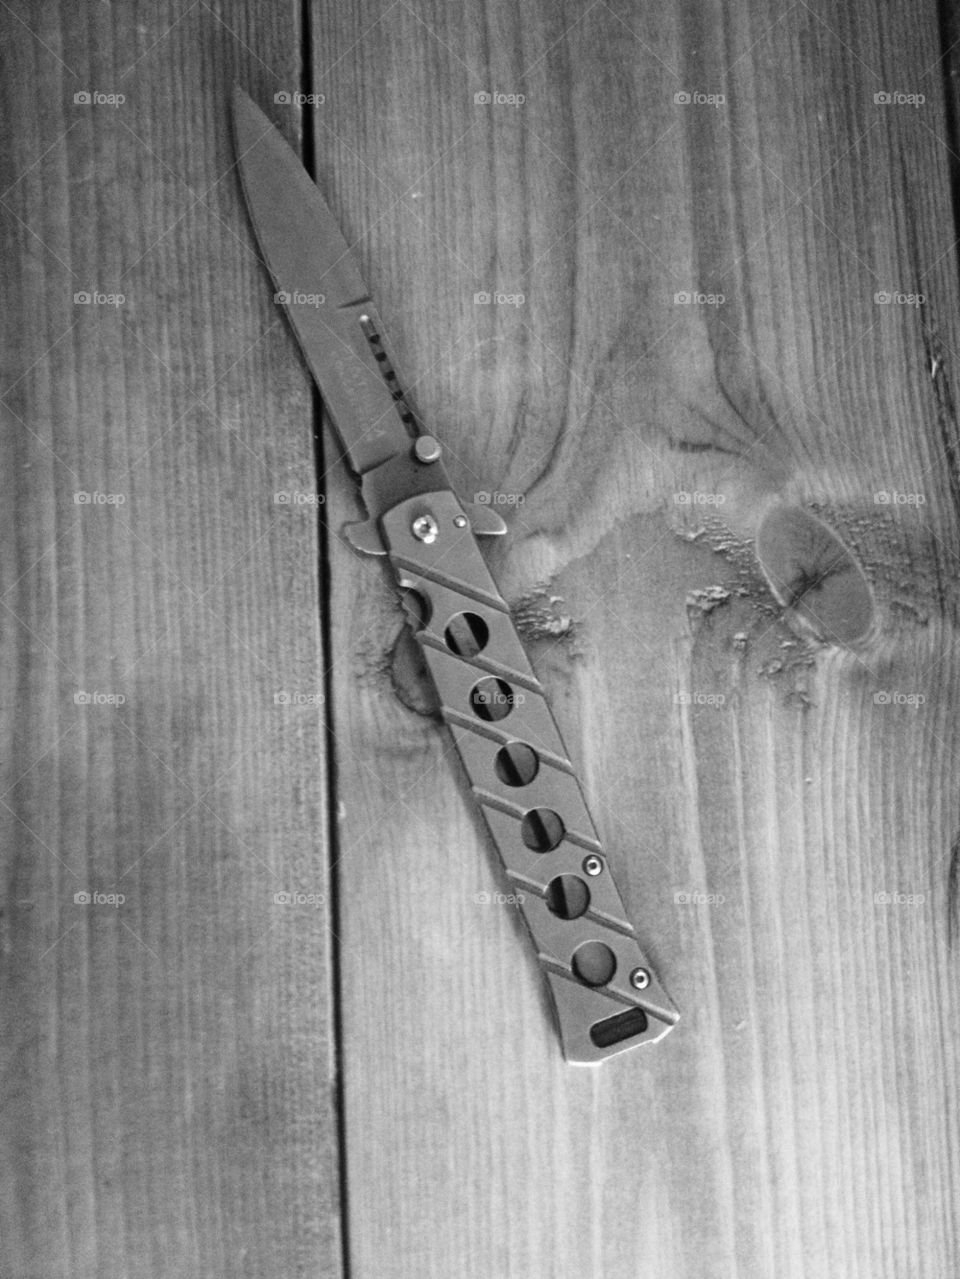 Knife on Wood